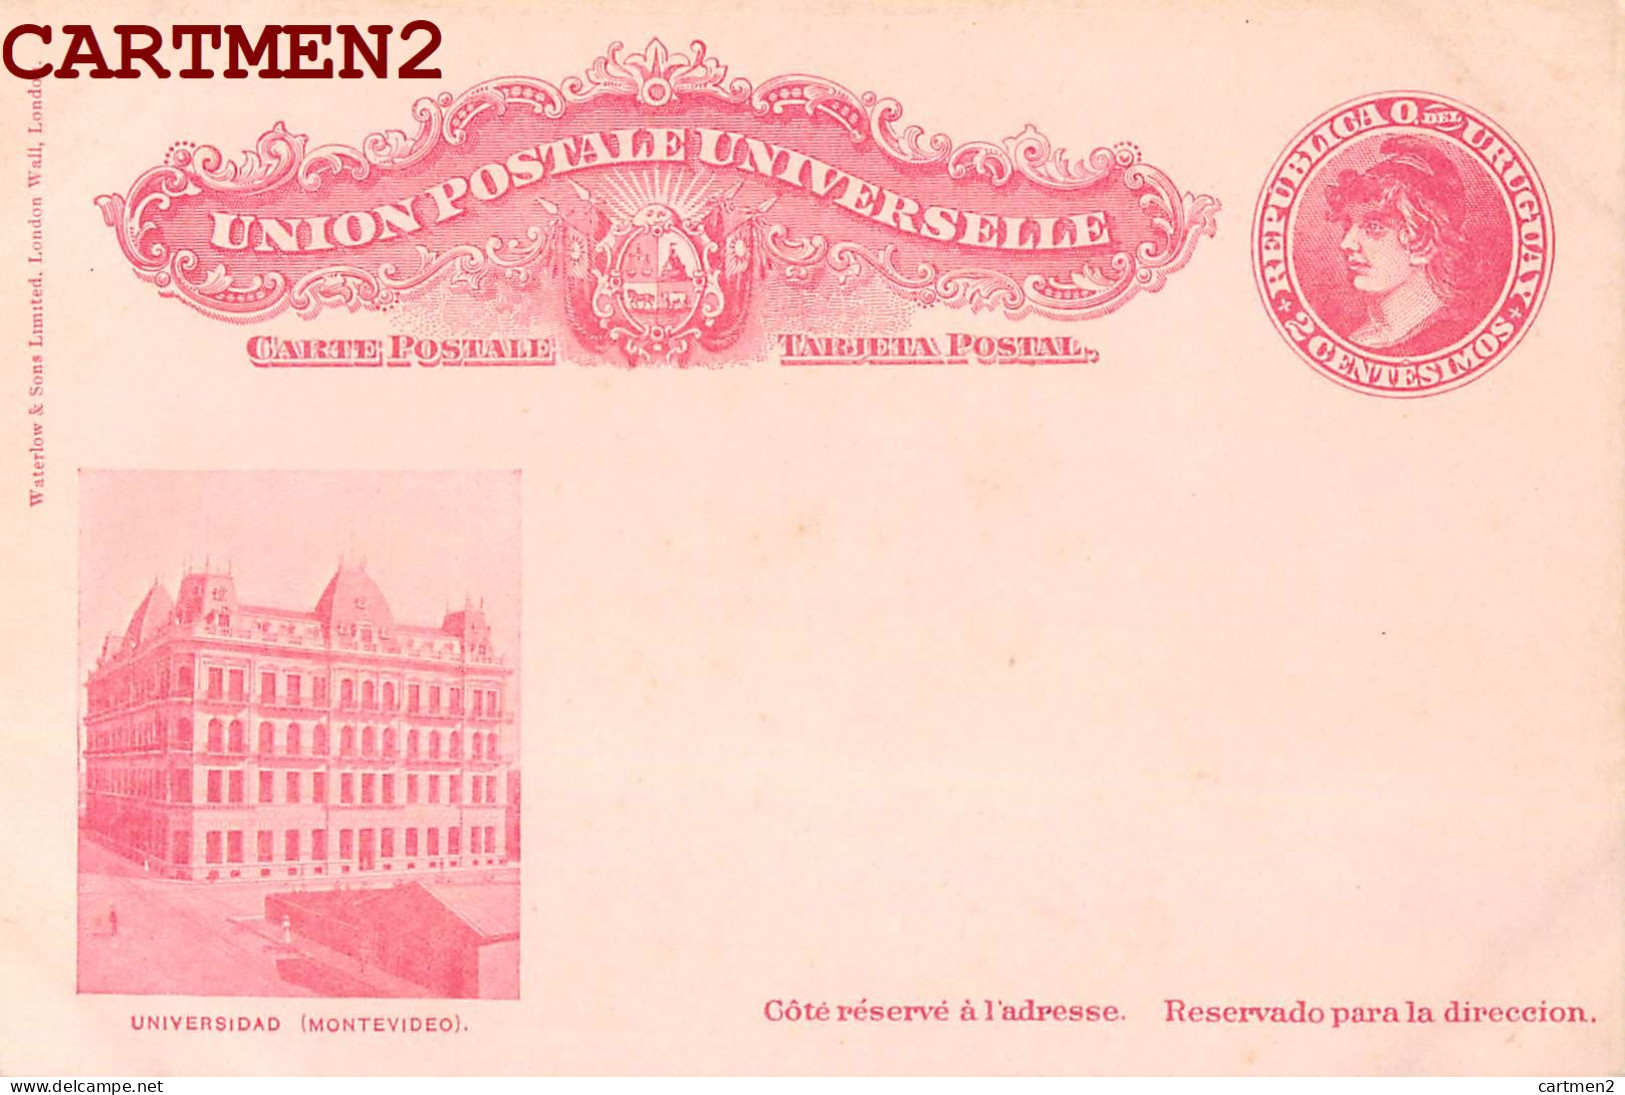 MONTEVIDEO REPUBLICA URUGUAY 2 CENTIMOS TARJETA POSTAL INTERIOR 1900 UNIVERSIDAD ENTIER POSTAL STAMP TIMBRE CORREOS - Uruguay